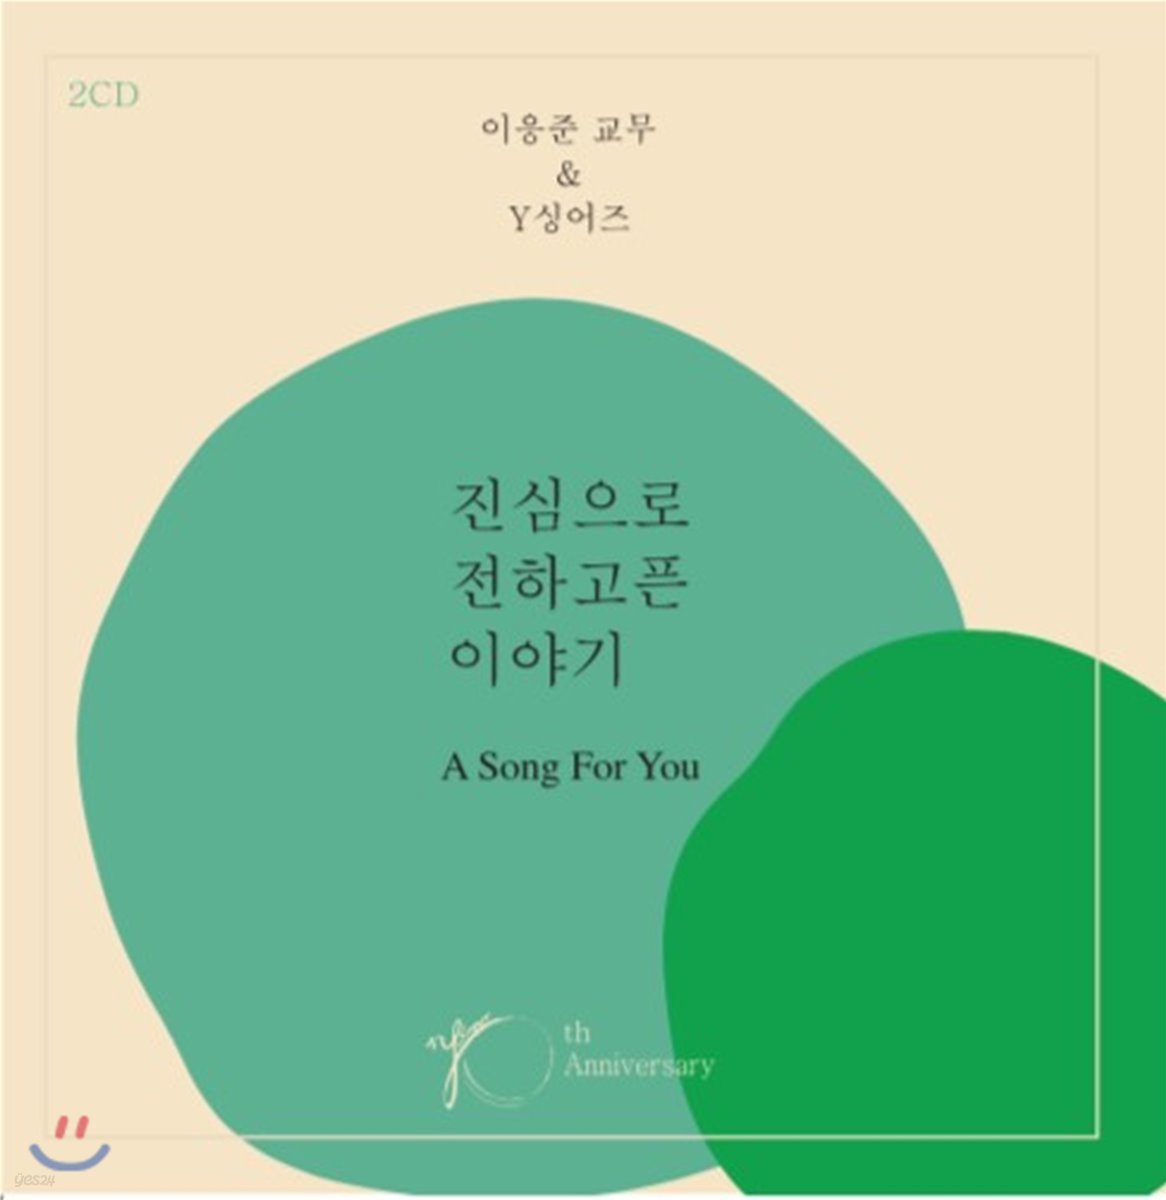 이응준 교무 & Y 싱어즈 - 진심으로 전하고픈 이야기 A Song For You